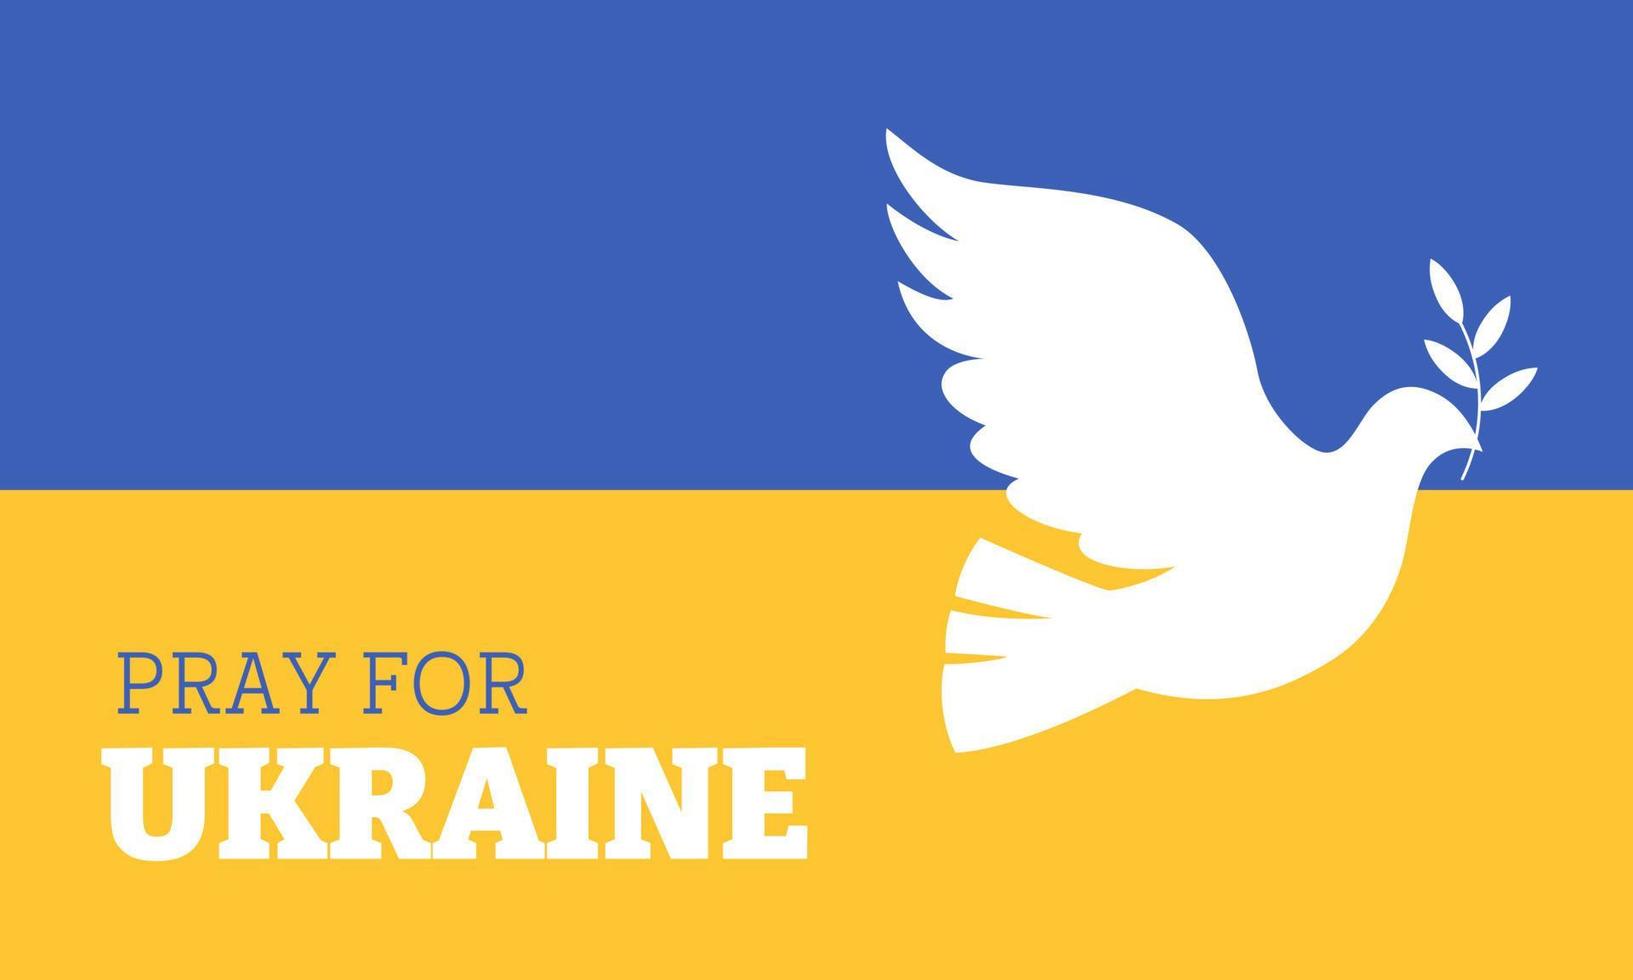 Oren por los antecedentes de Ucrania. paloma blanca con una rama de olivo en el fondo de la bandera de ucrania. ilustración plana vectorial. vector